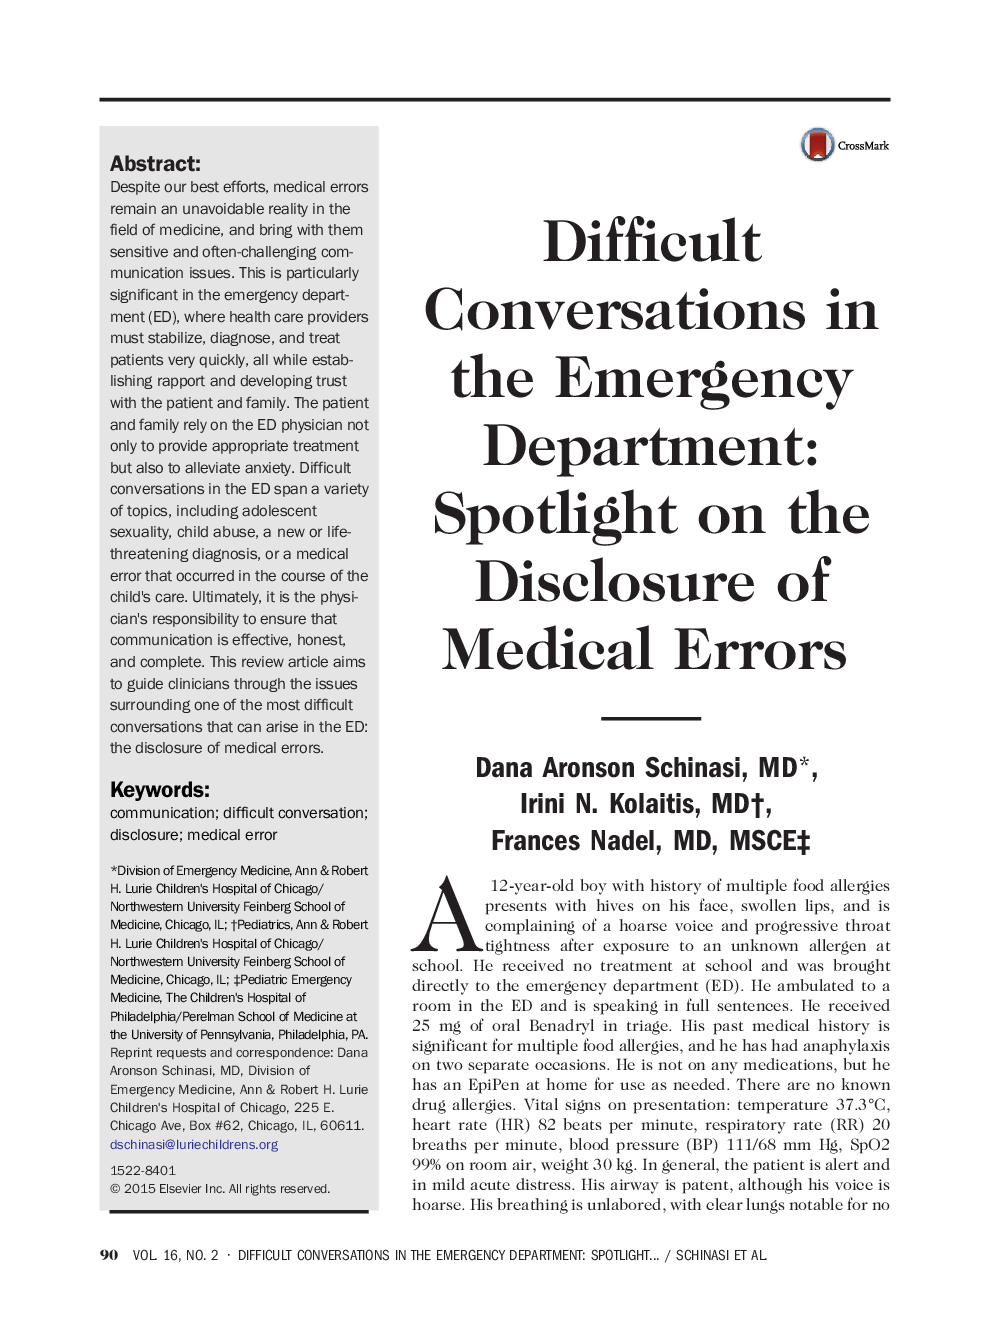 مکالمه های سخت در بخش اورژانس: توجه ویژه به افشای خطاهای پزشکی